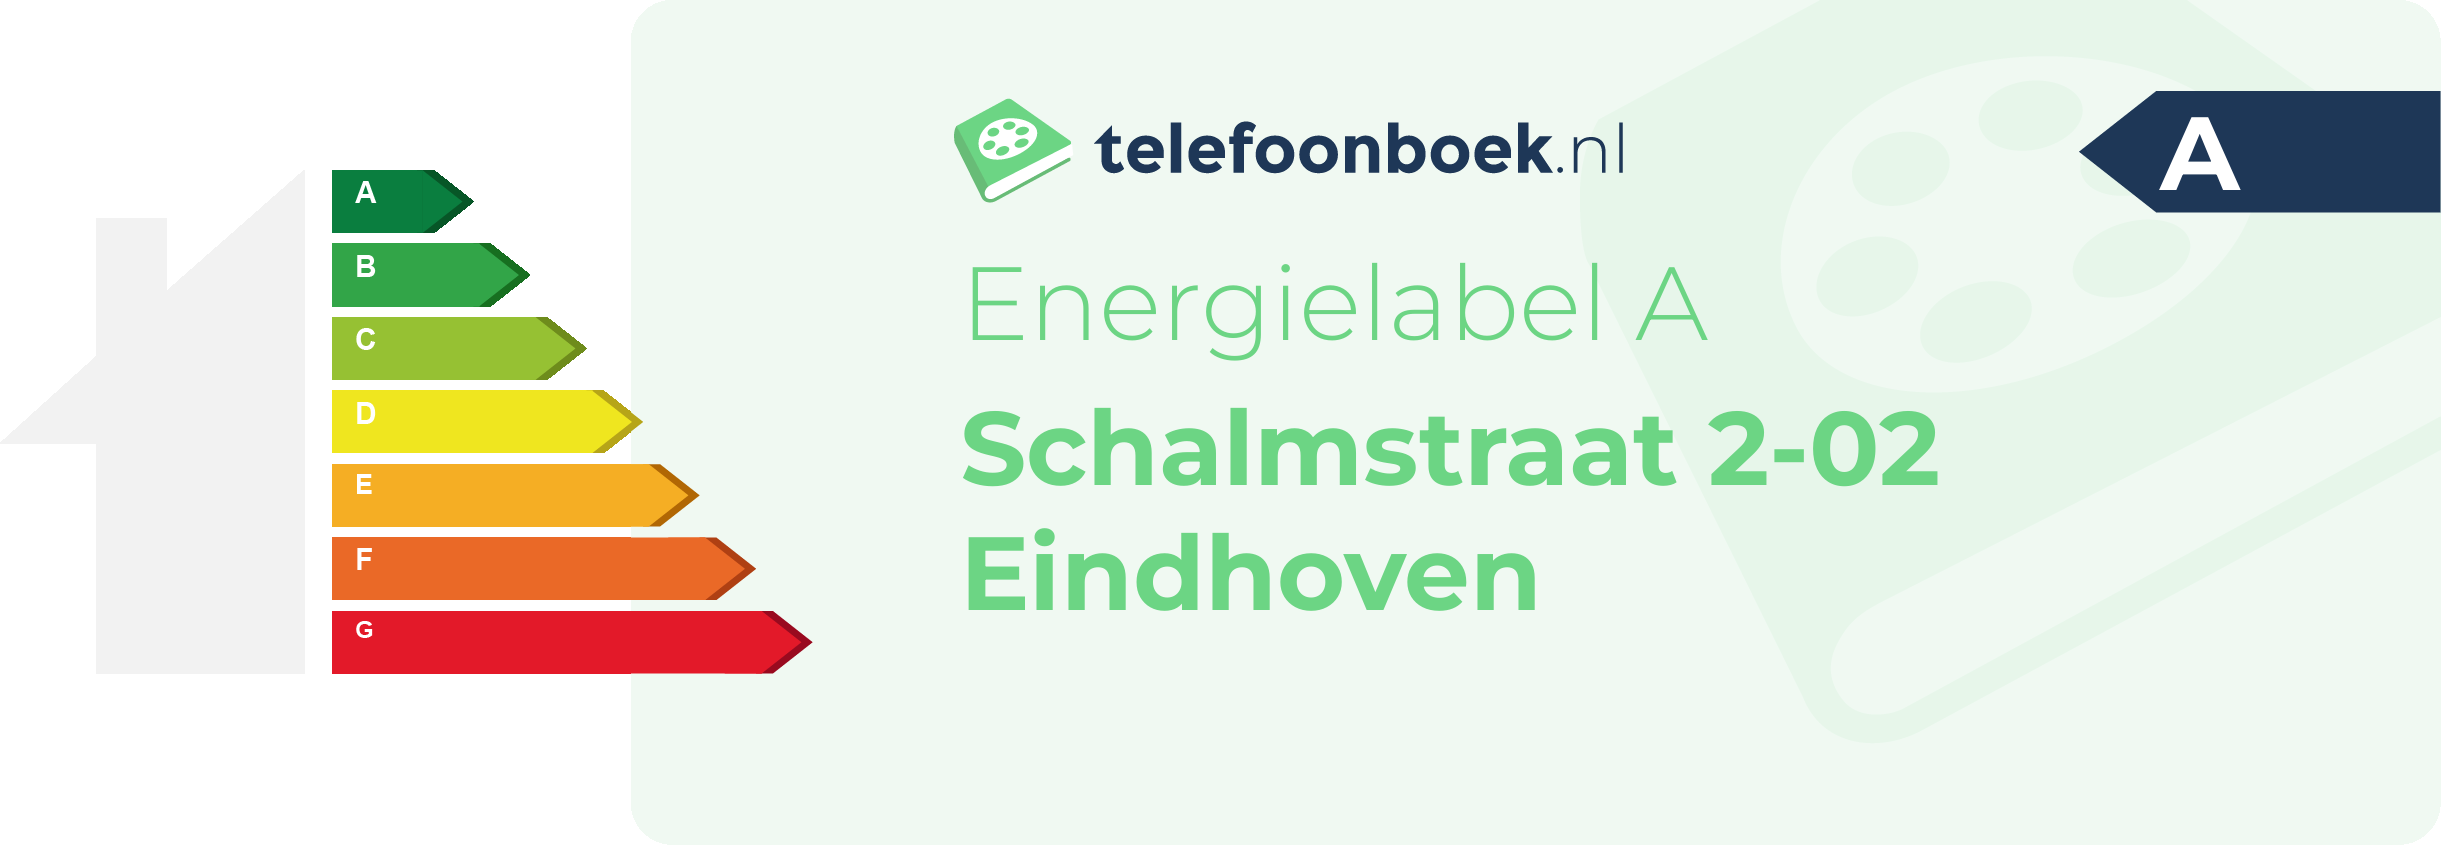 Energielabel Schalmstraat 2-02 Eindhoven